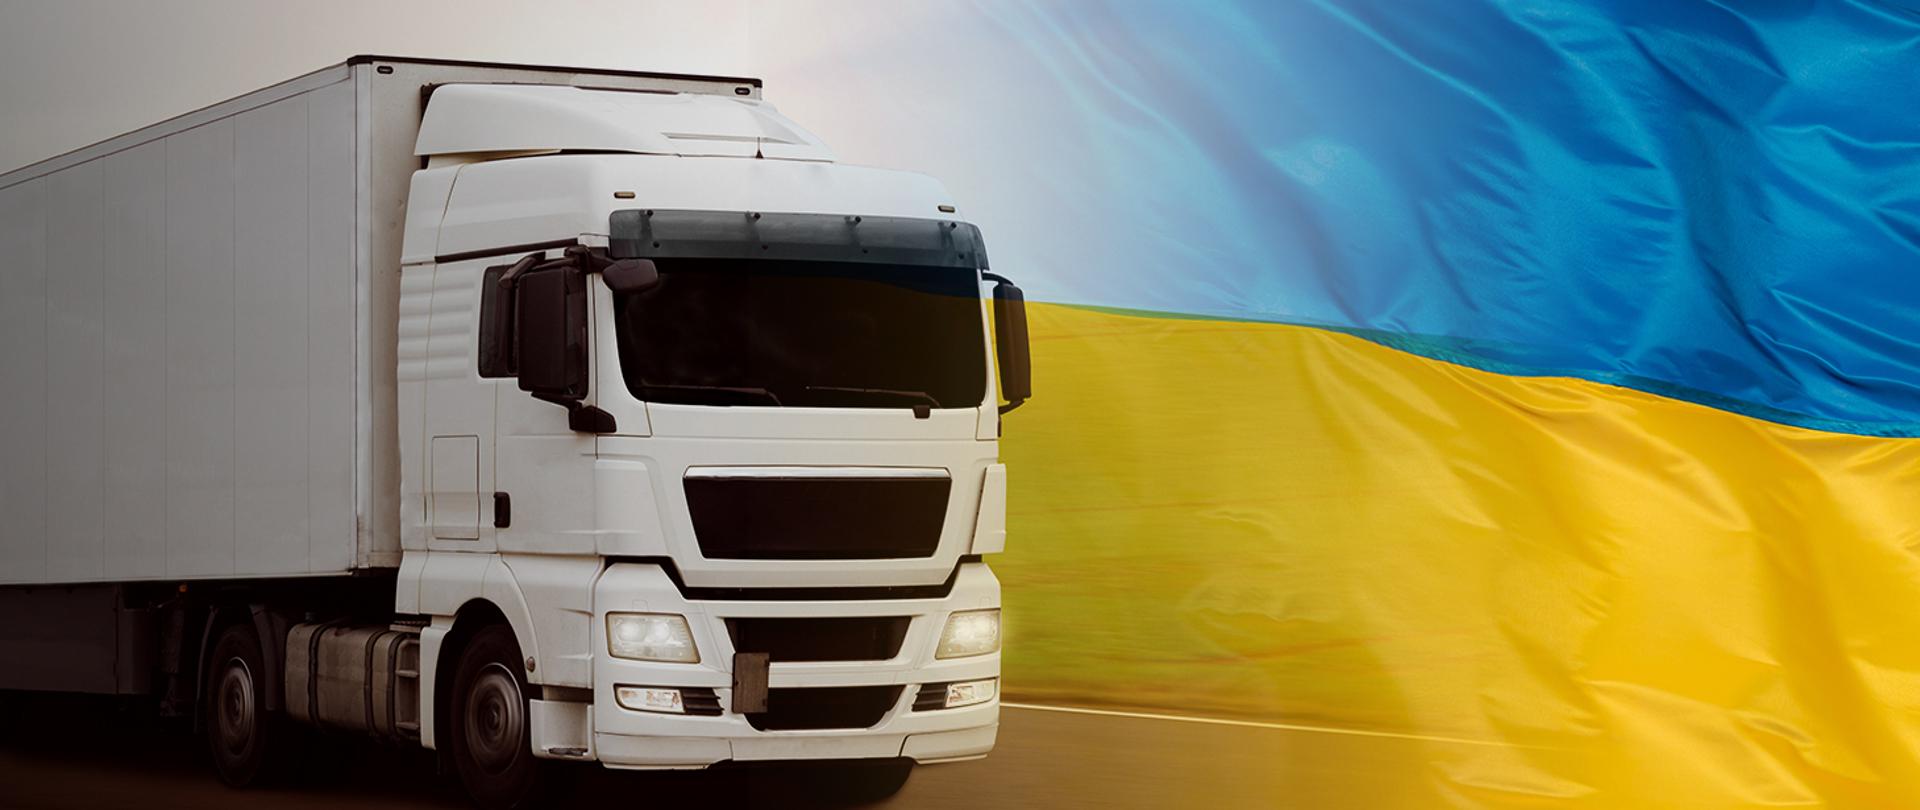 Ciężarówka, flaga Ukrainy
